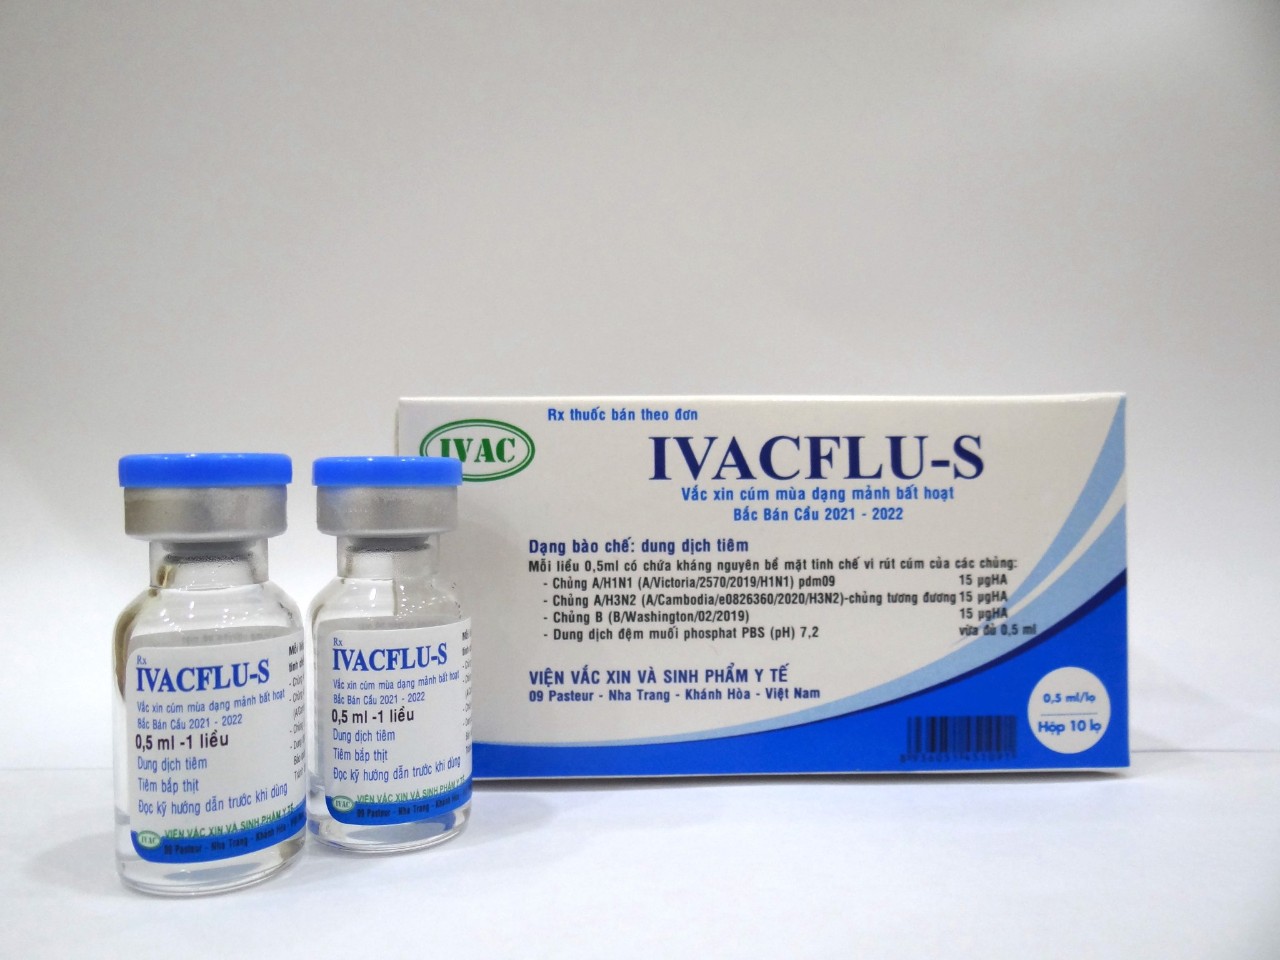 Vắc xin cúm của Việt Nam Ivacflu-S phòng được 3 chủng cúm là cúm A(H3N2), cúm A(H1N1),và cúm B (Victoria/Yamagata)